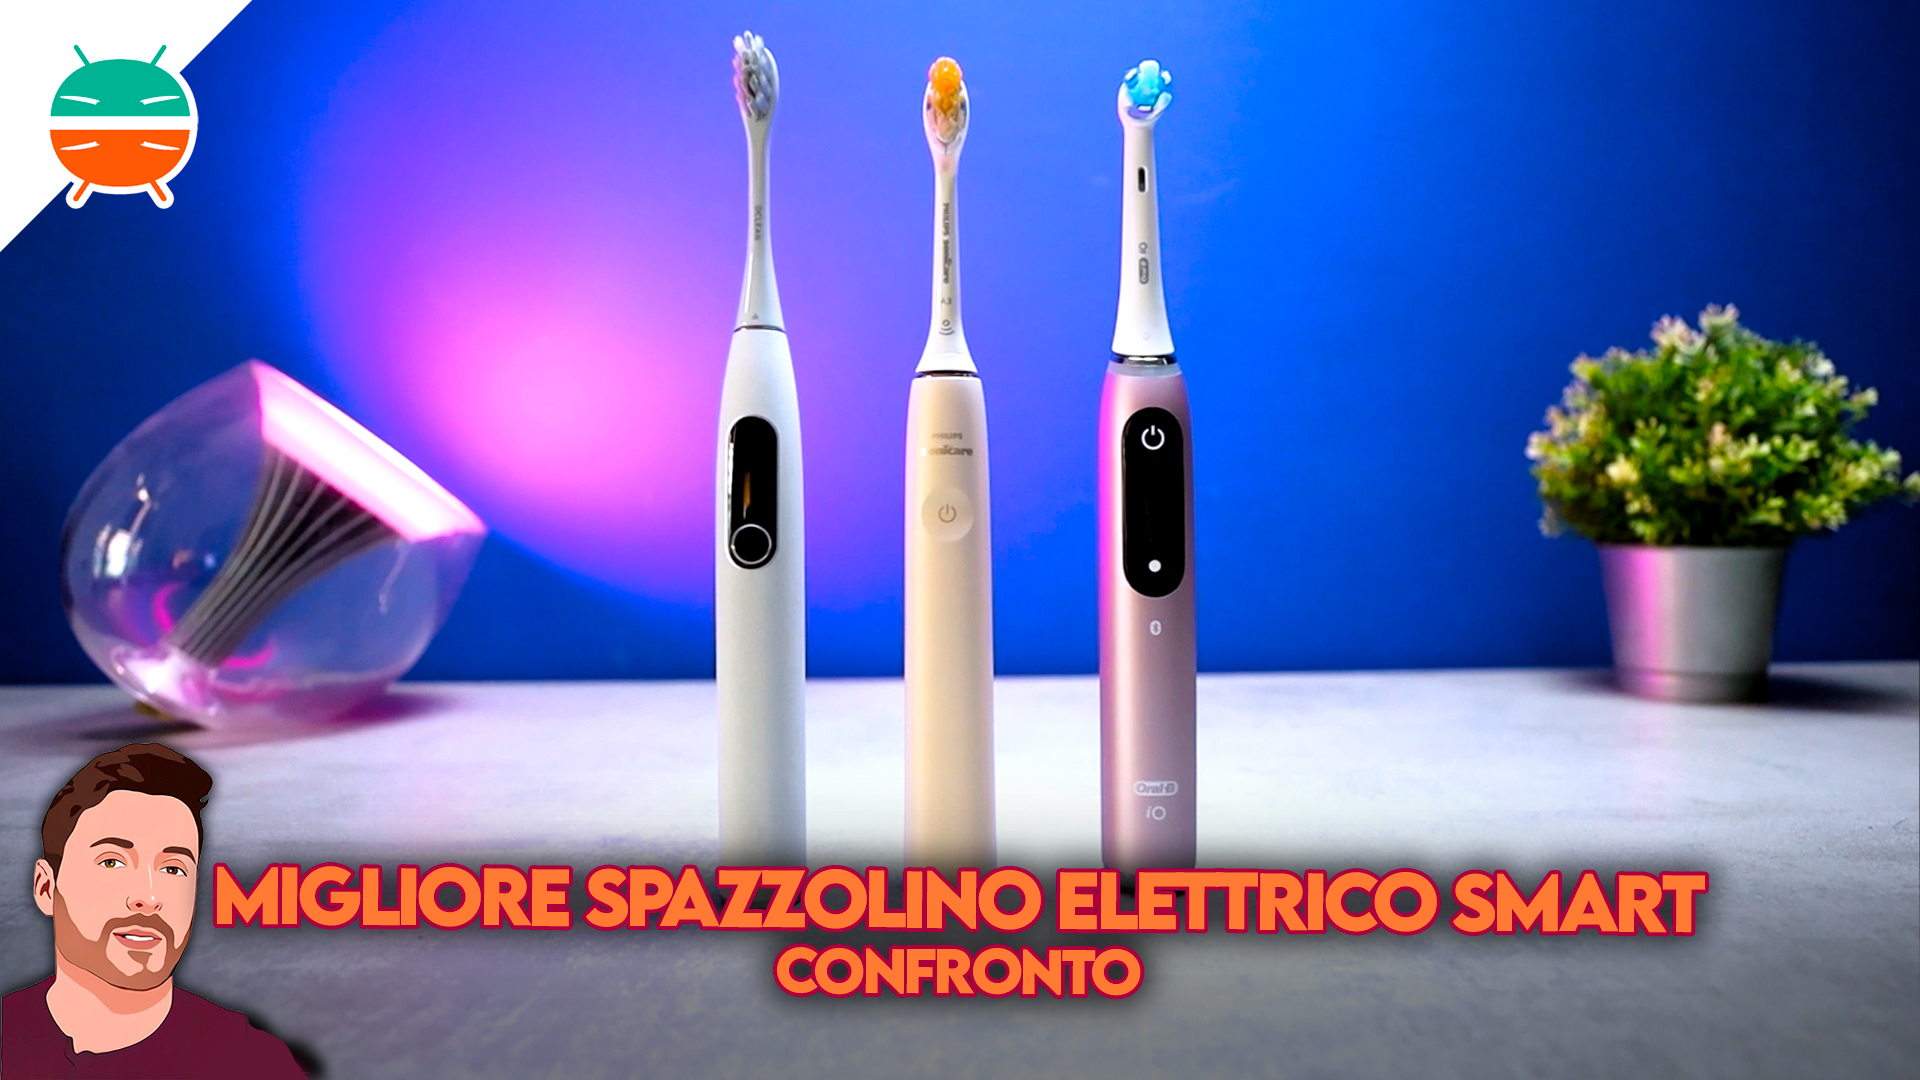 J'ai testé la brosse à dents électrique Sonicare 9900 Prestige de